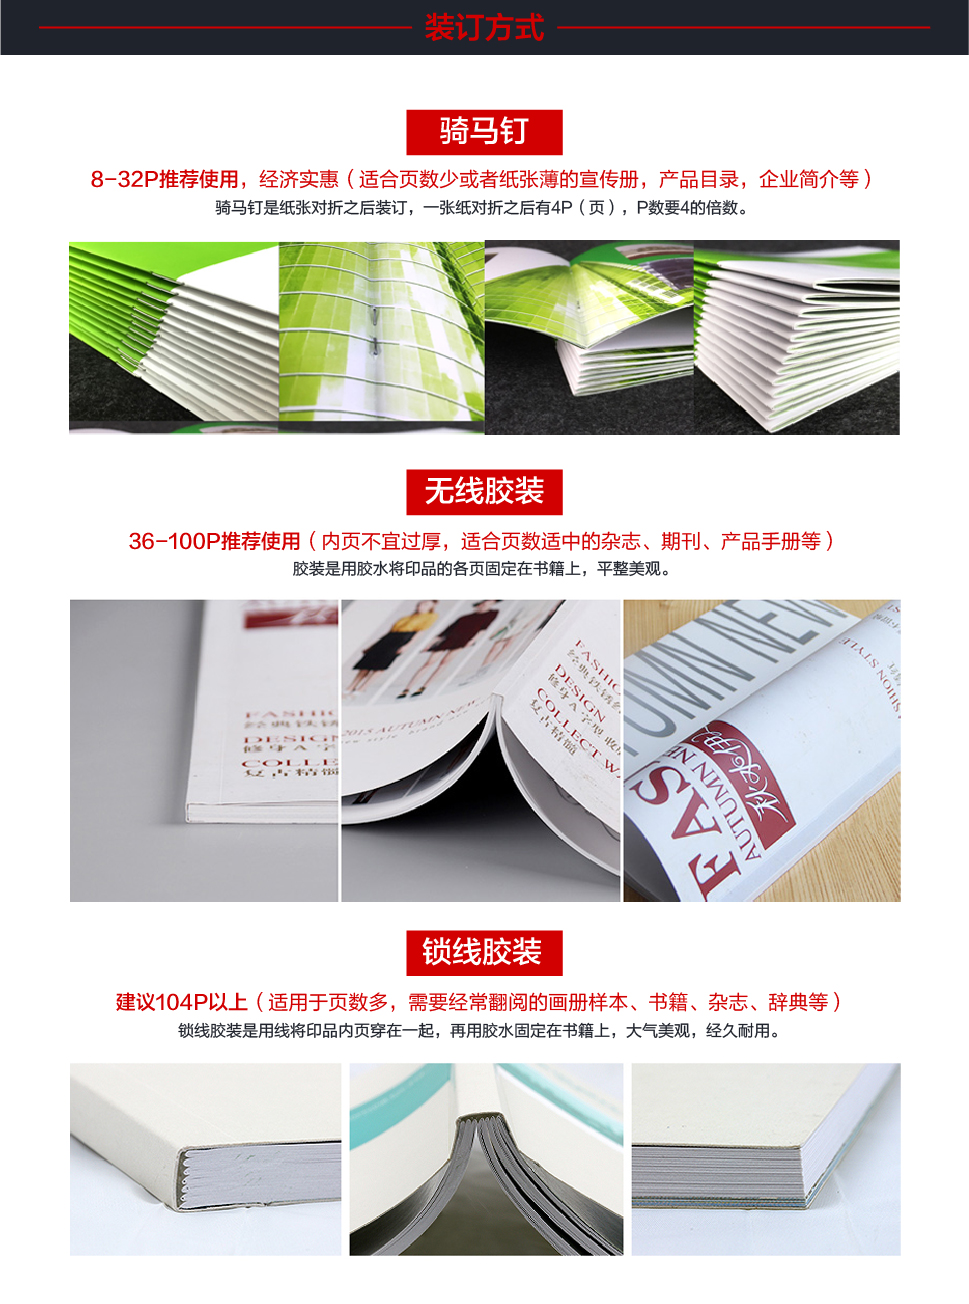 广州画册印刷|产品宣传画册设计|企业广告画册定做|服装画册印刷